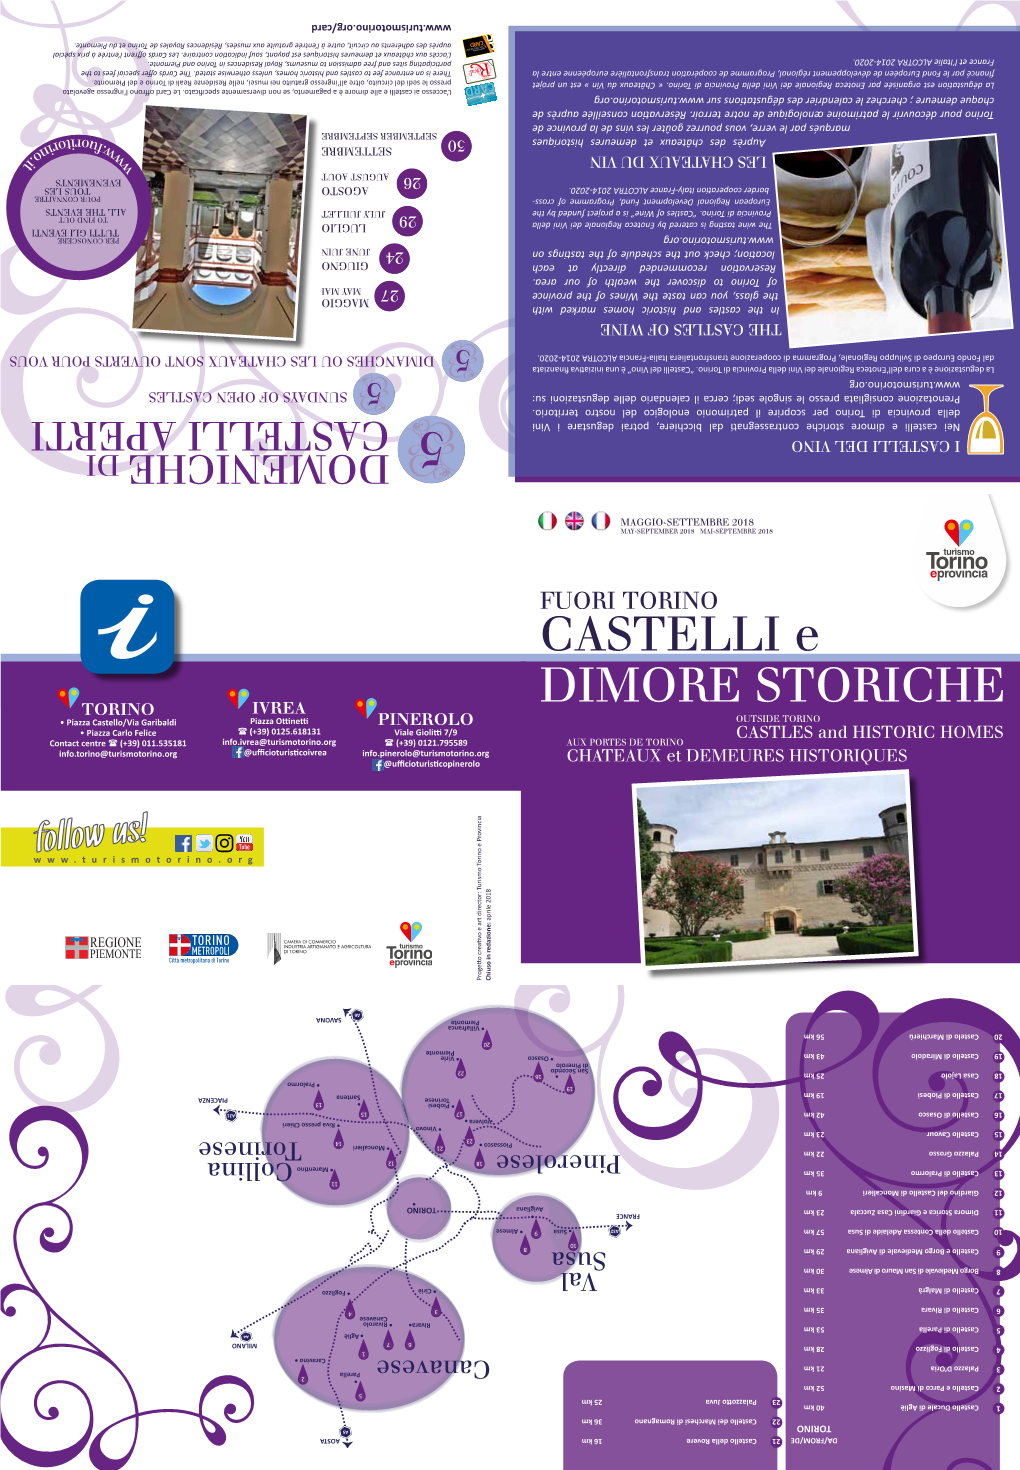 Castelli E Dimore Storiche 5